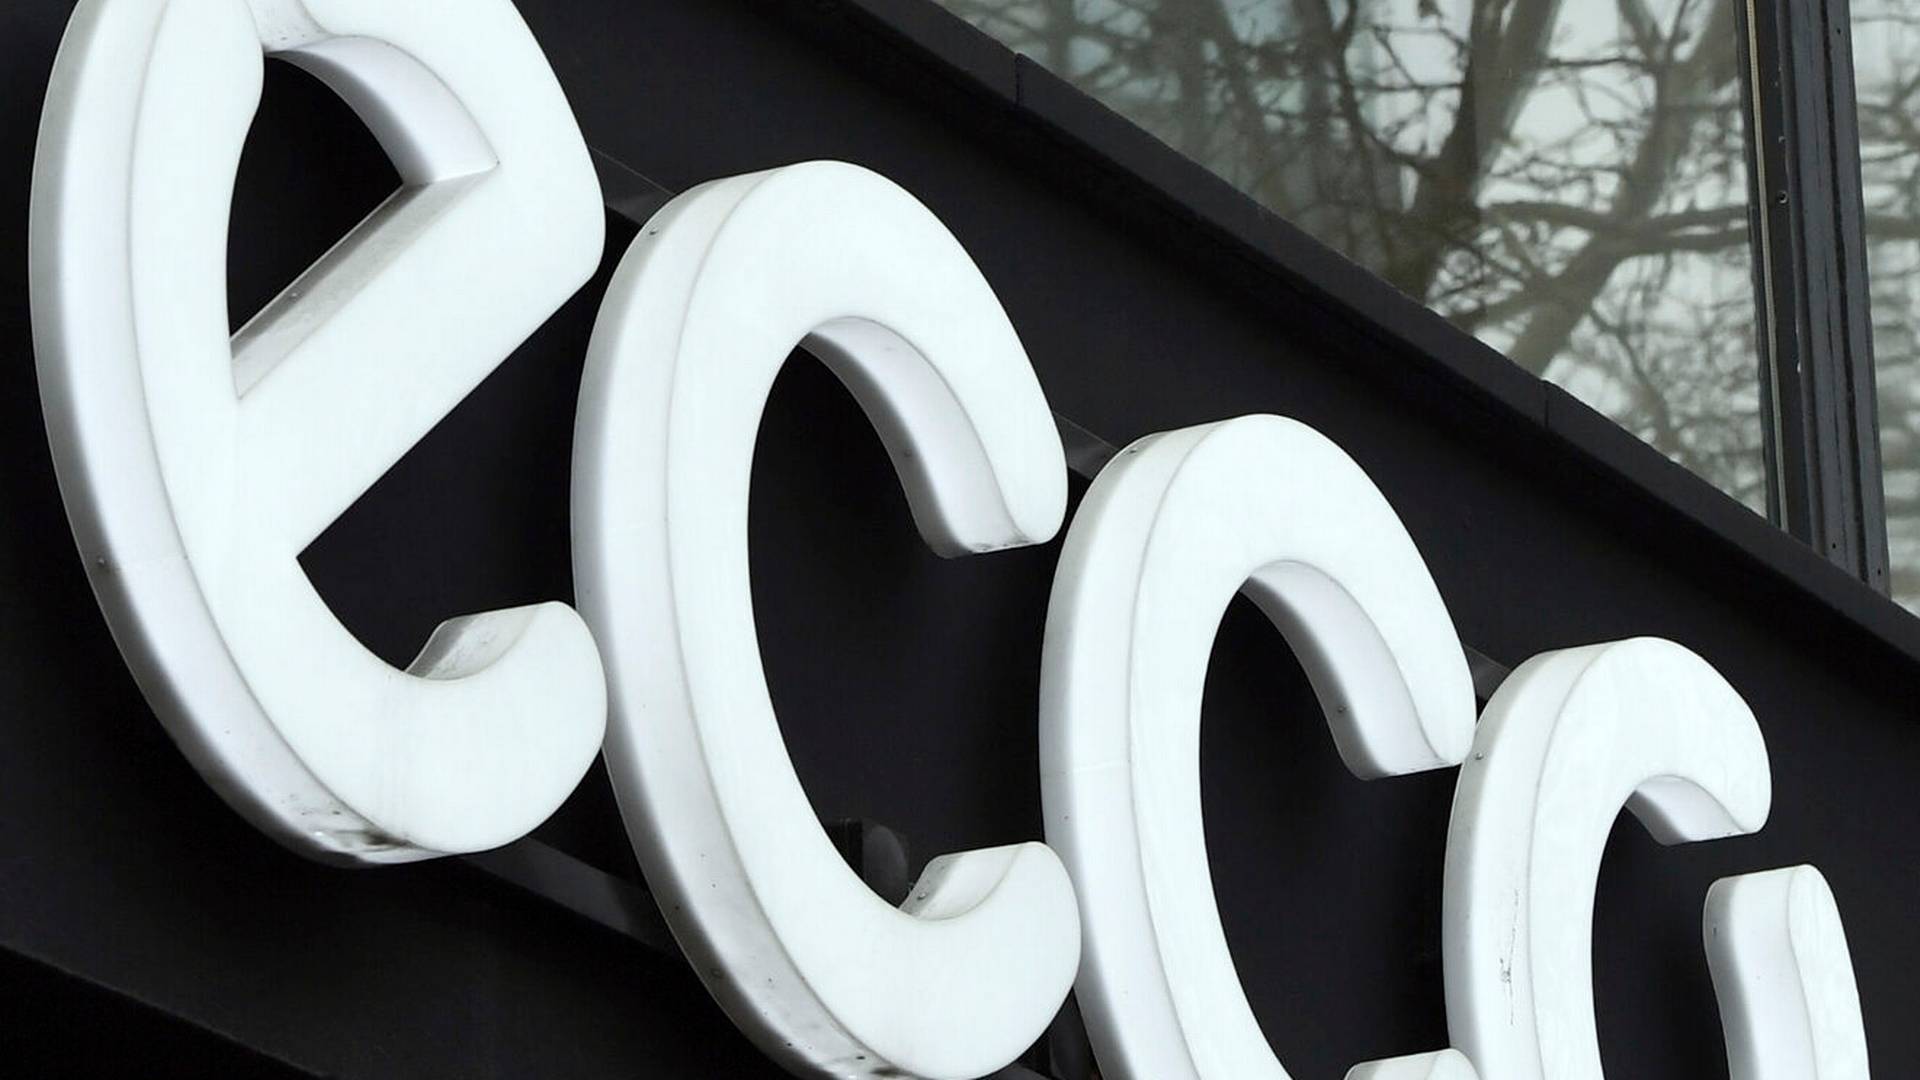 Flere genoptaget salget af Ecco-sko trods boykot: "Vi kun beklage" DetailWatch